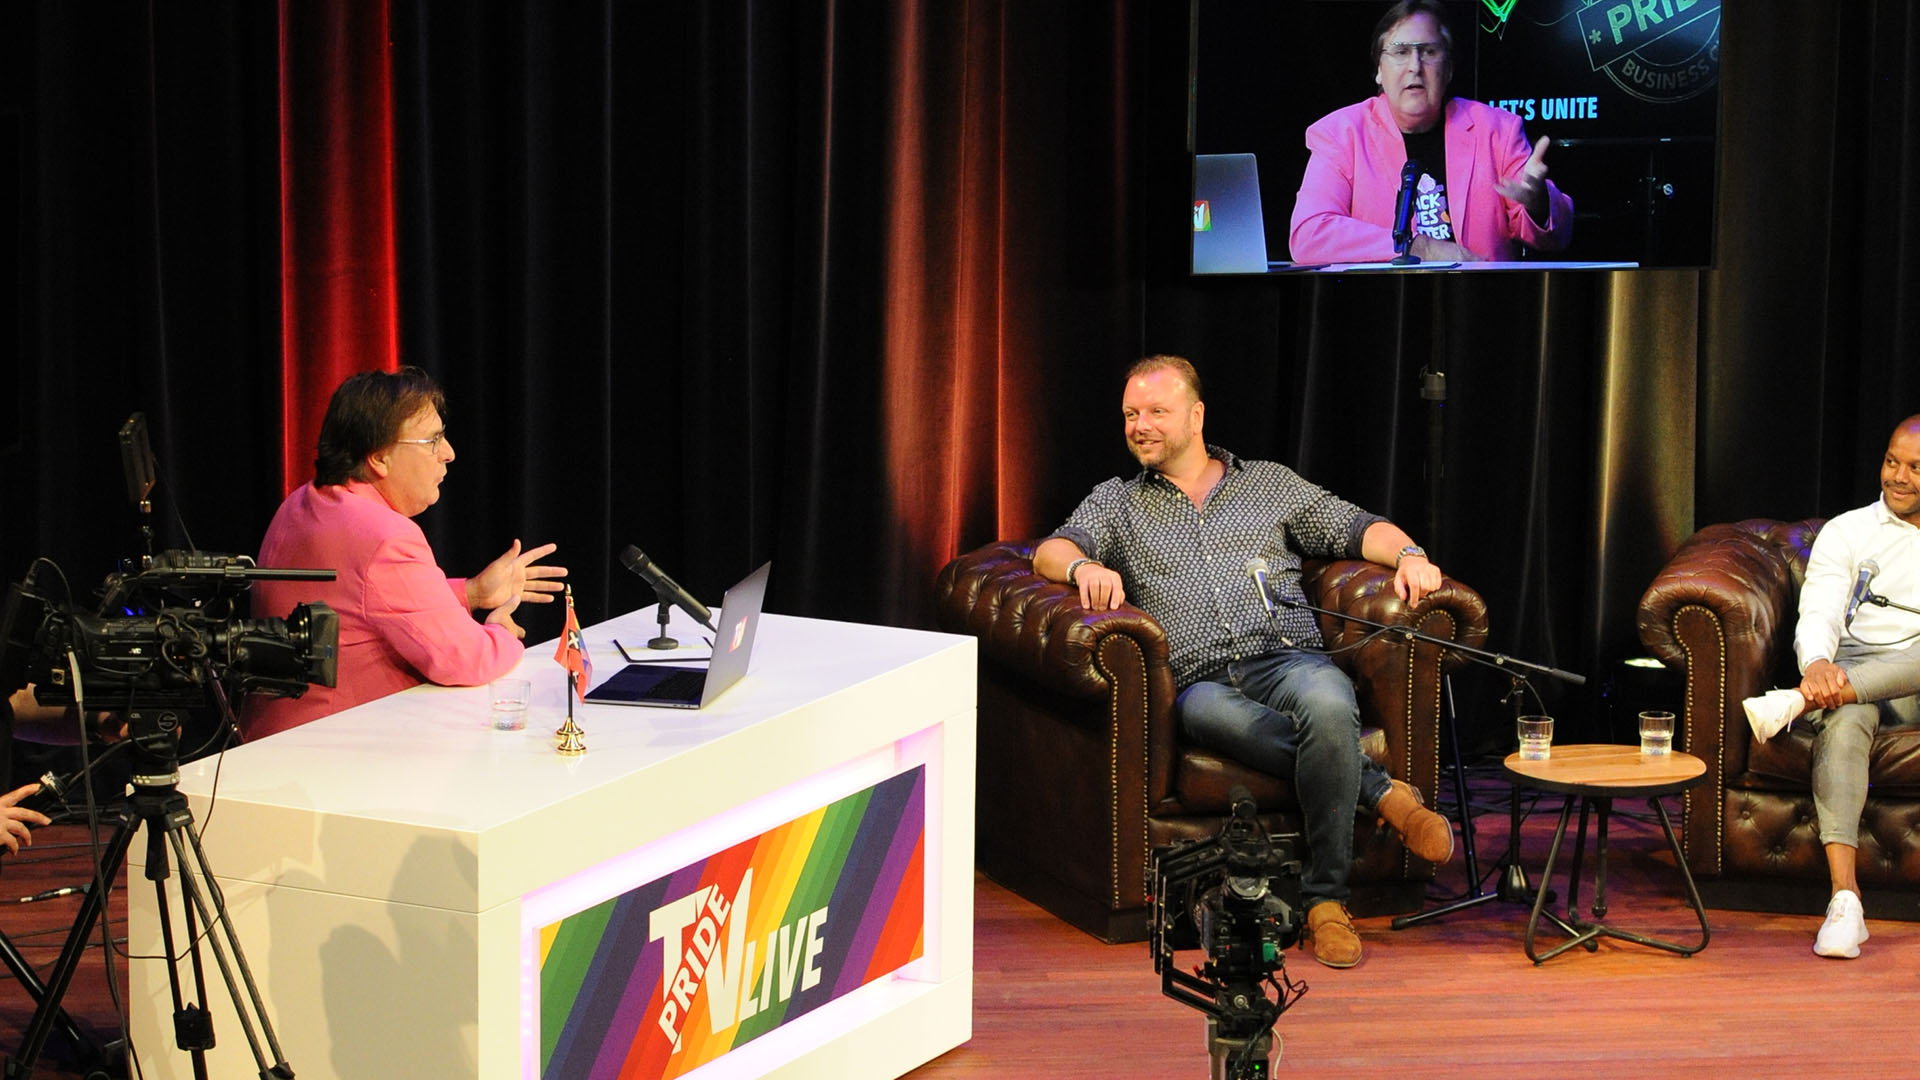 Pride TV in gesprek over het belang van een veilig werkklimaat voor lhbti’ers